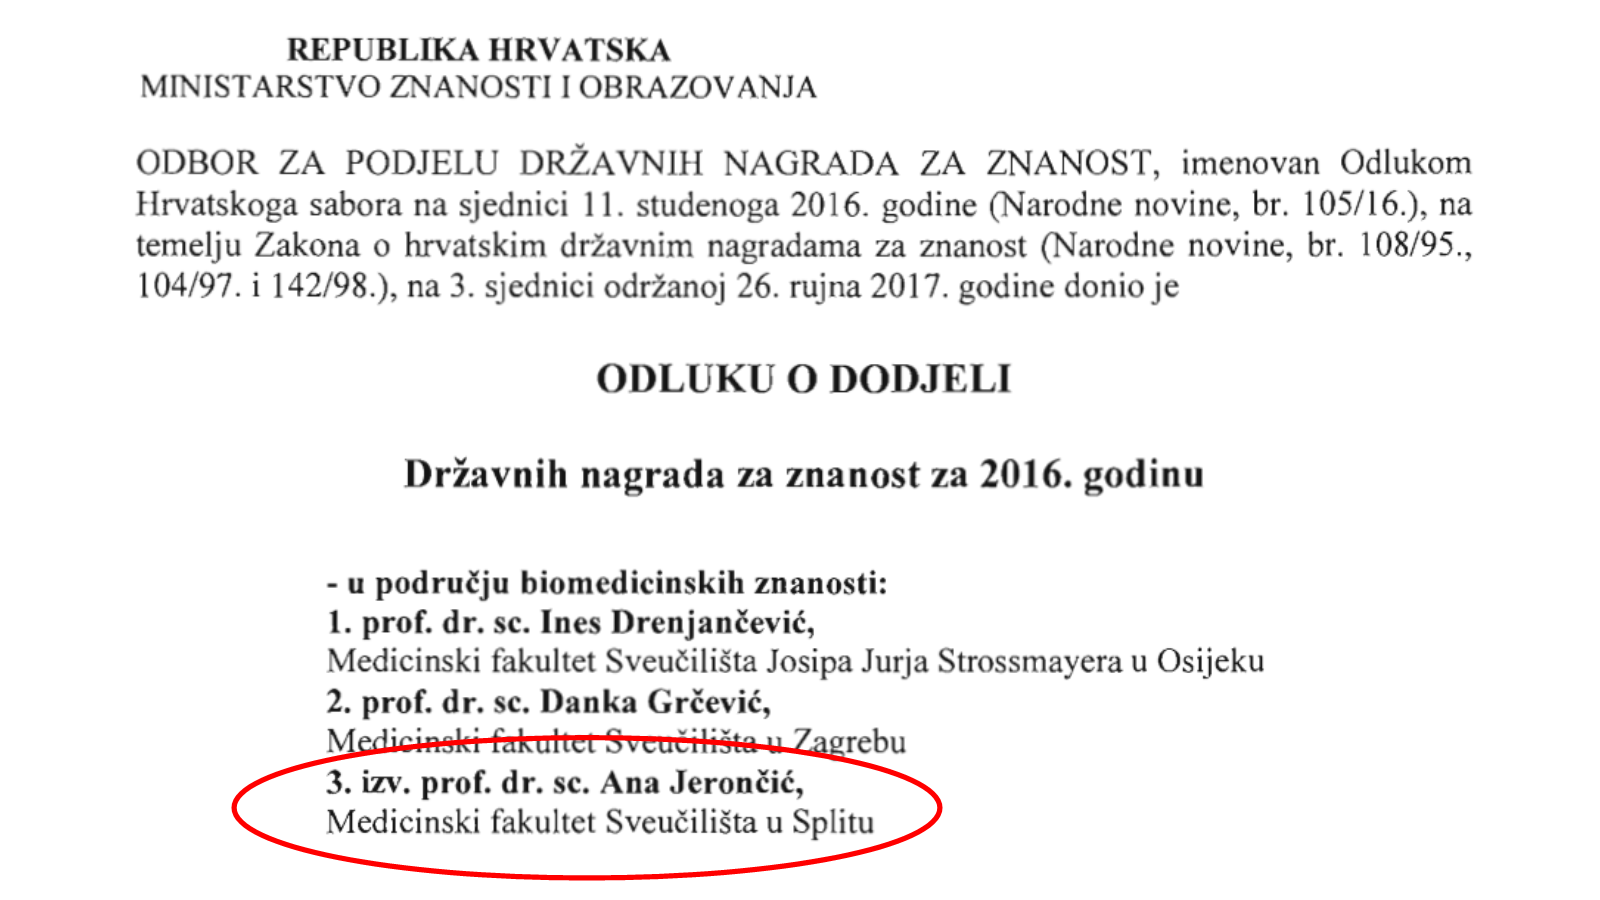 Državna nagrada za znanost za 2016. za izv. prof. dr. sc. Anu Jerončić